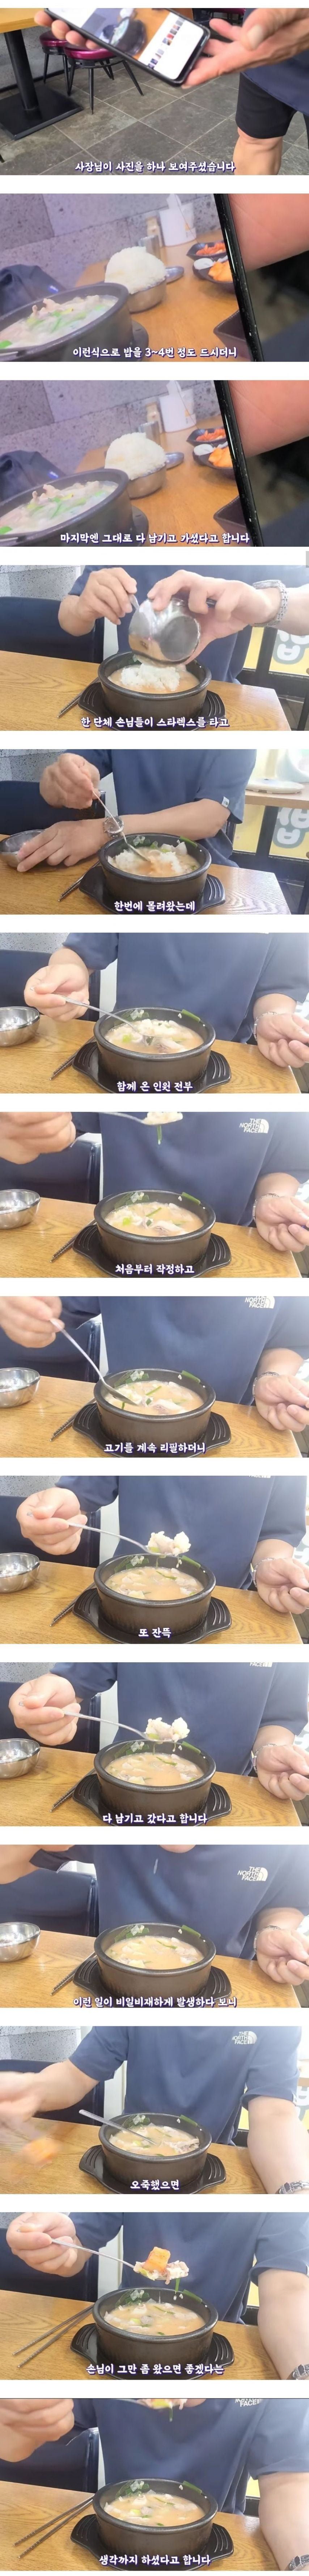 유튜브에 맛집 소개 됐다가 적자난 국밥집.jpg